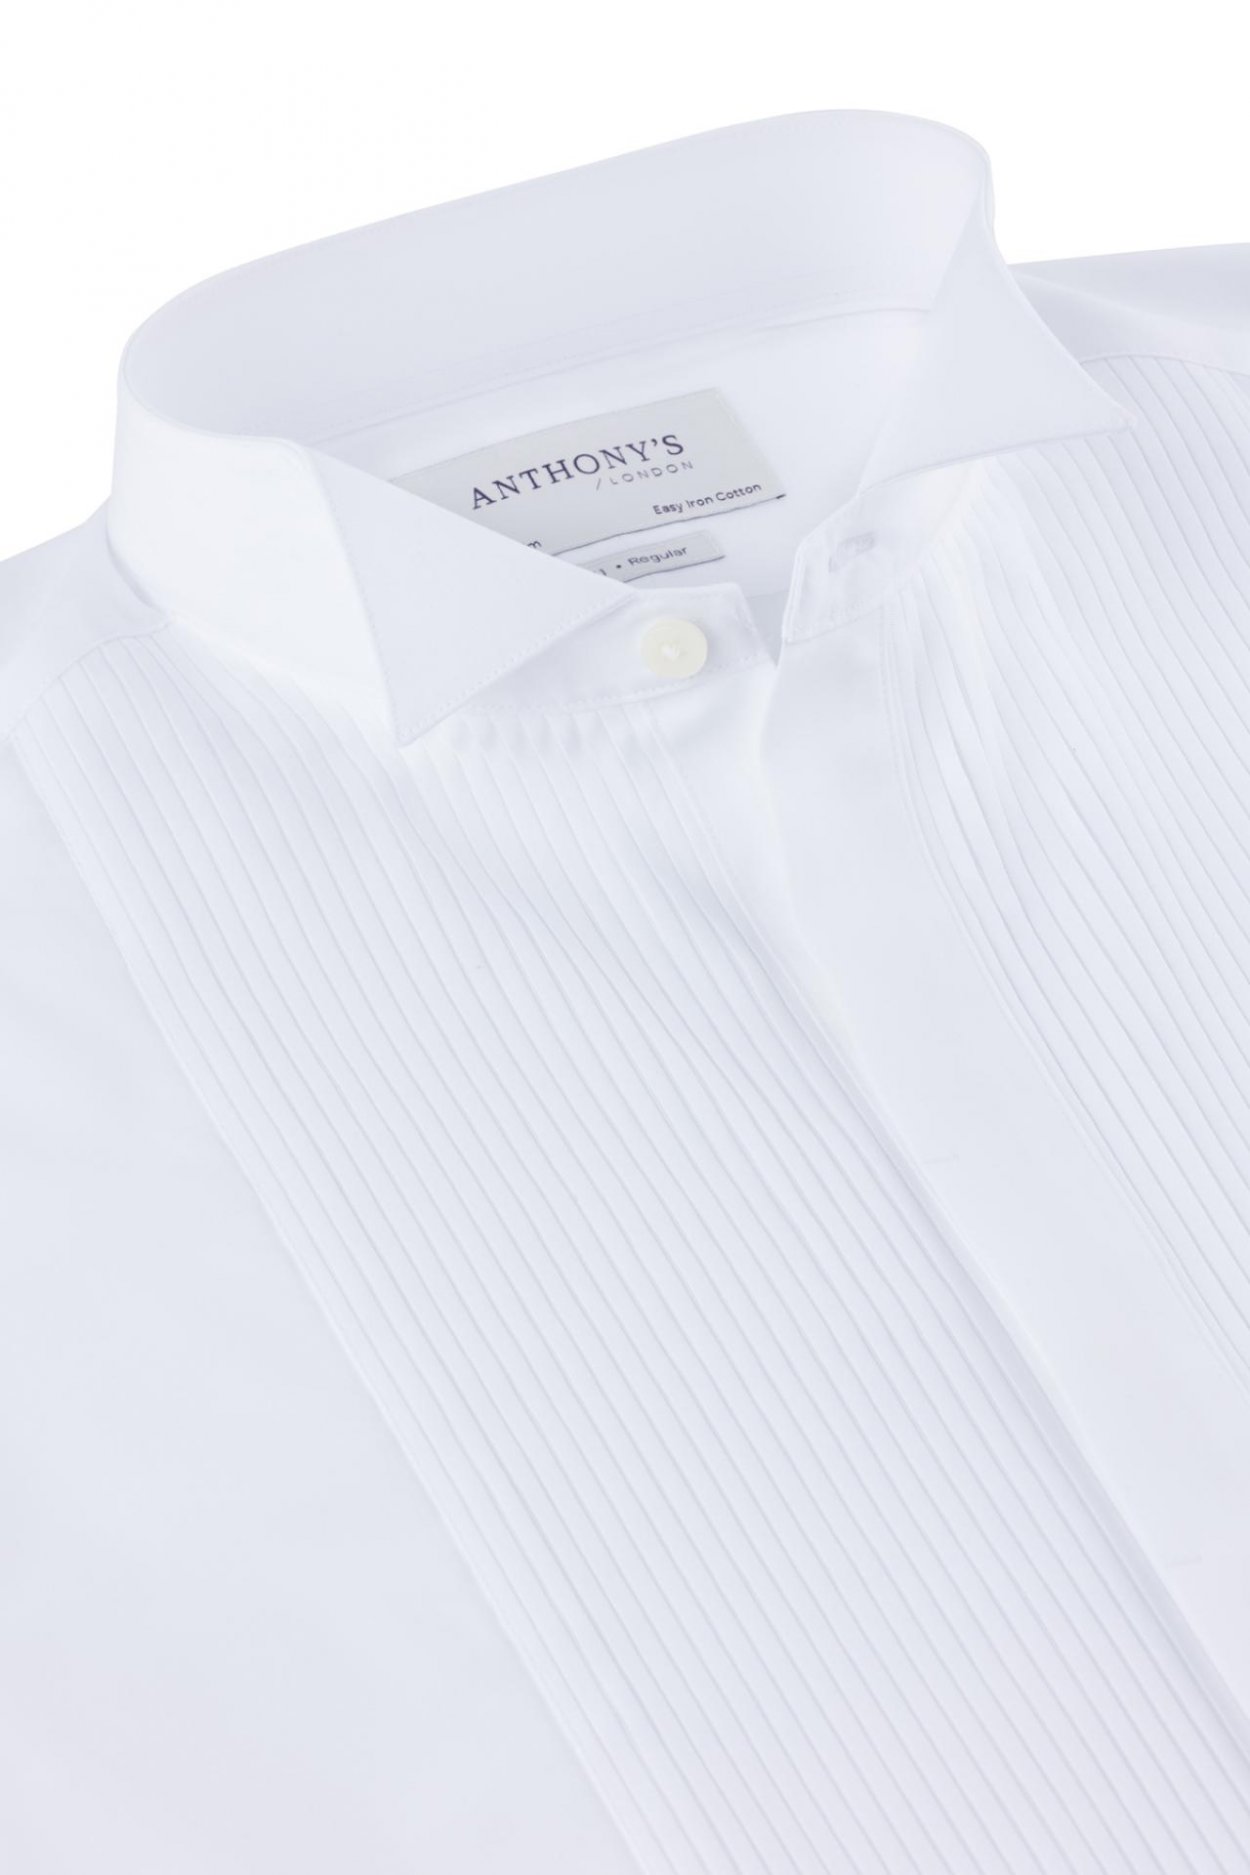 Pánská bílá smokingová košile na manžetové knoflíčky